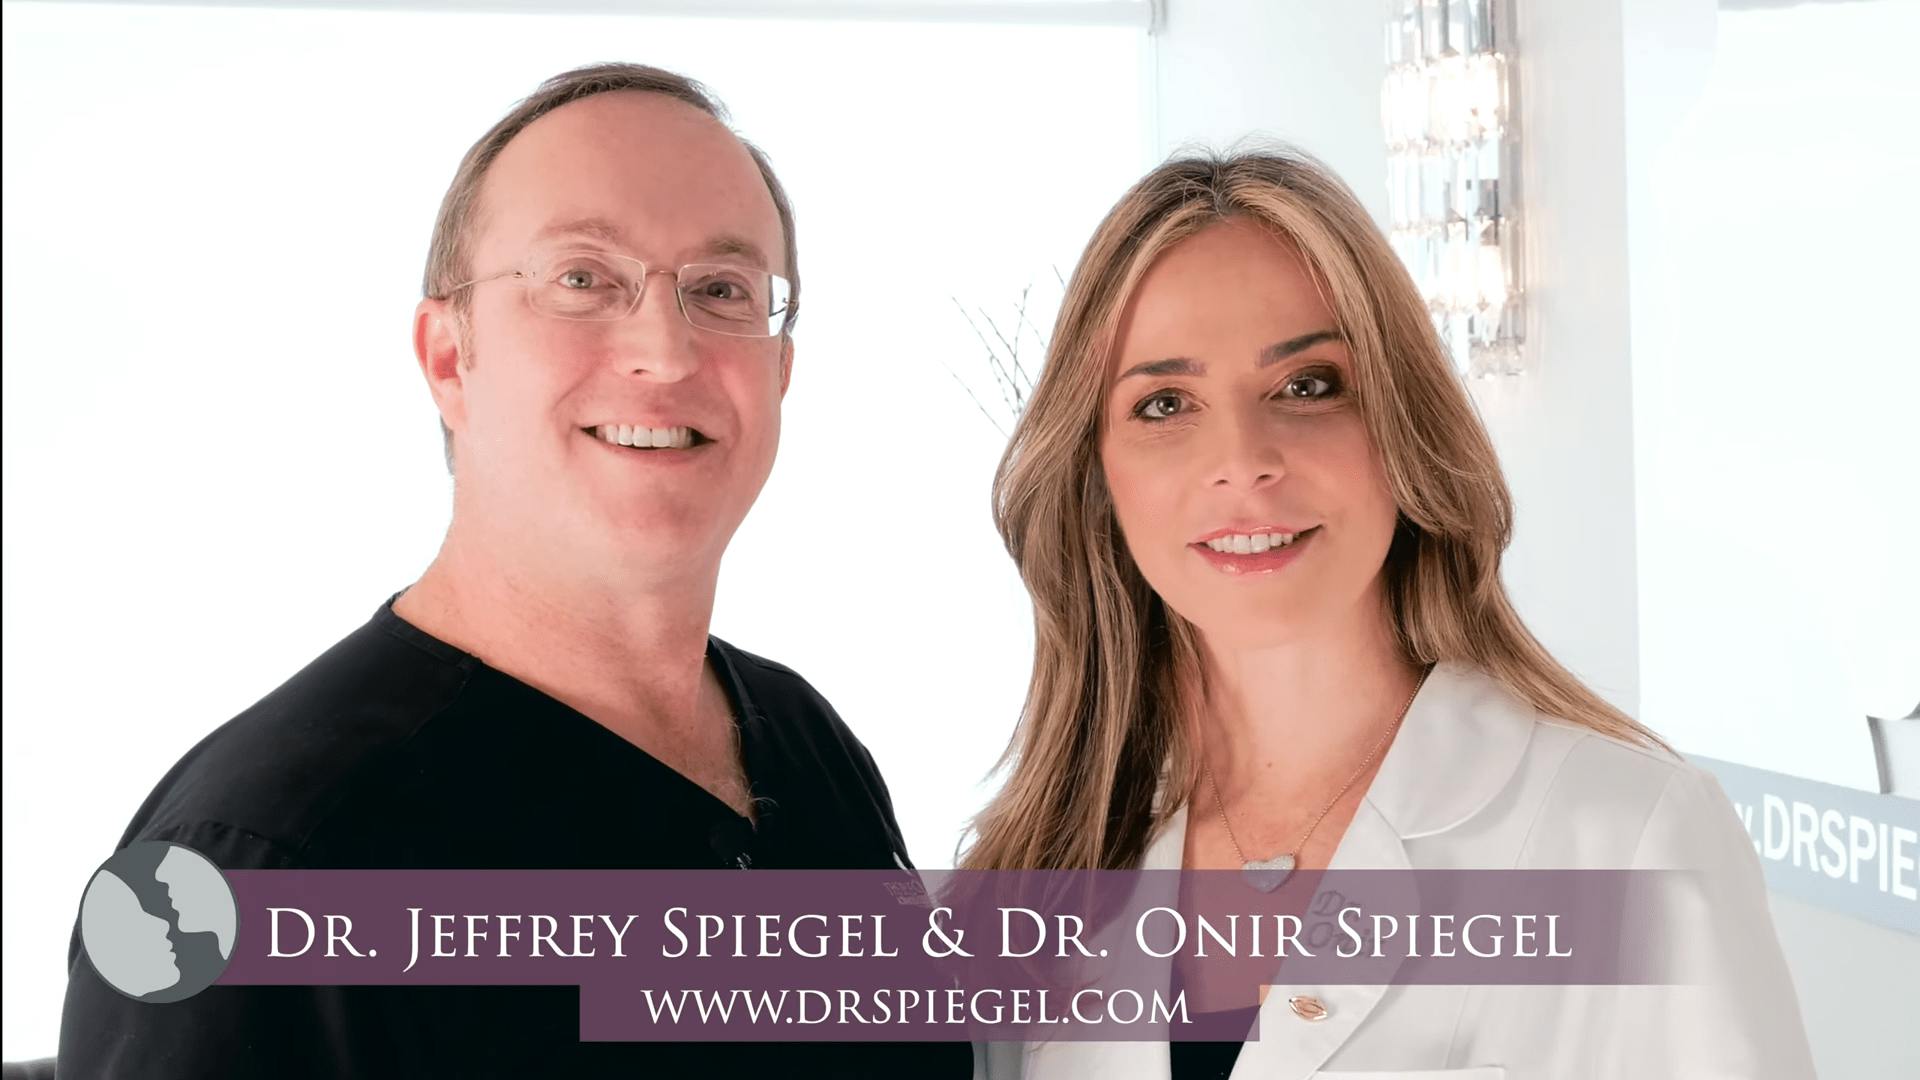 Doctors Jeffrey and Onir Spiegel